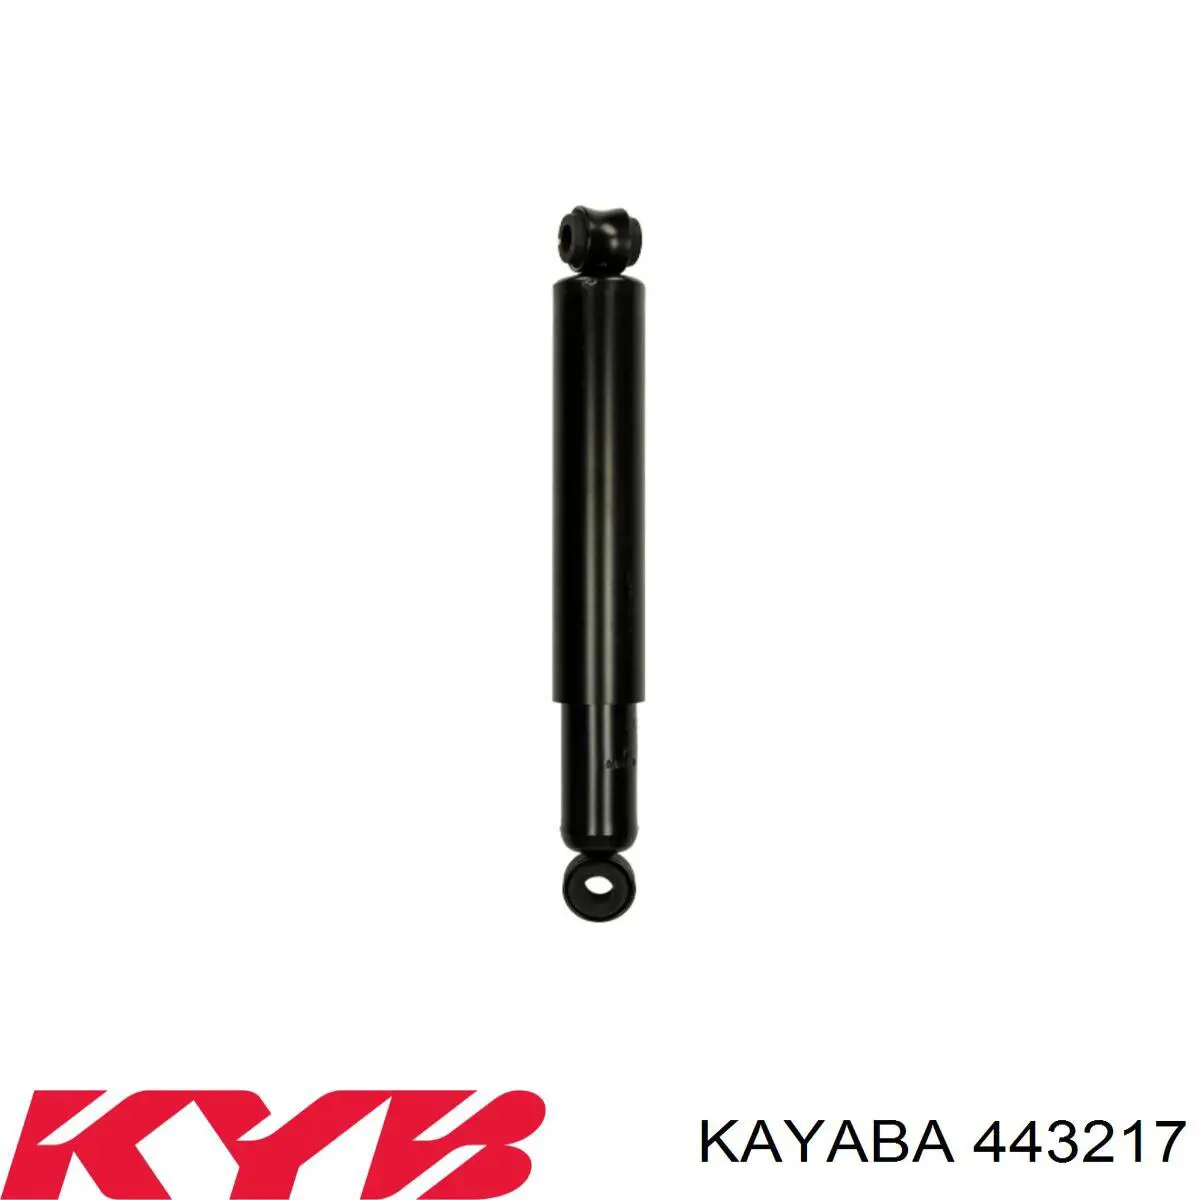 443217 Kayaba amortiguador trasero